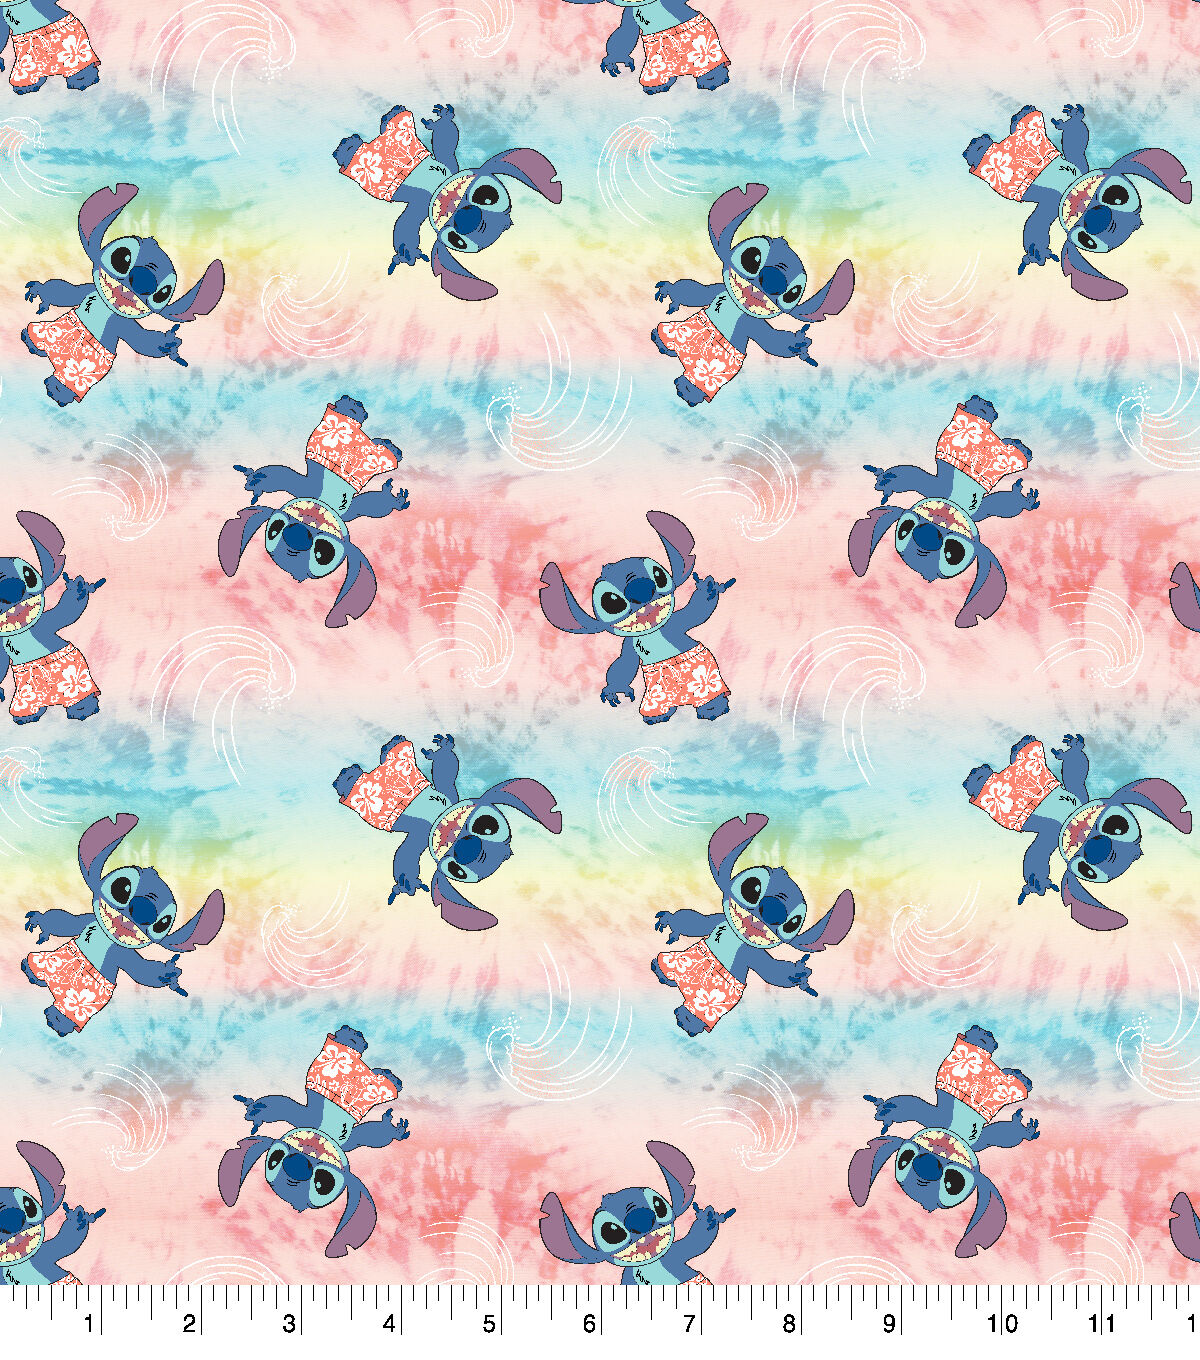 Disney Stitch Tie Dye Wave Cotton Fabric by Disney